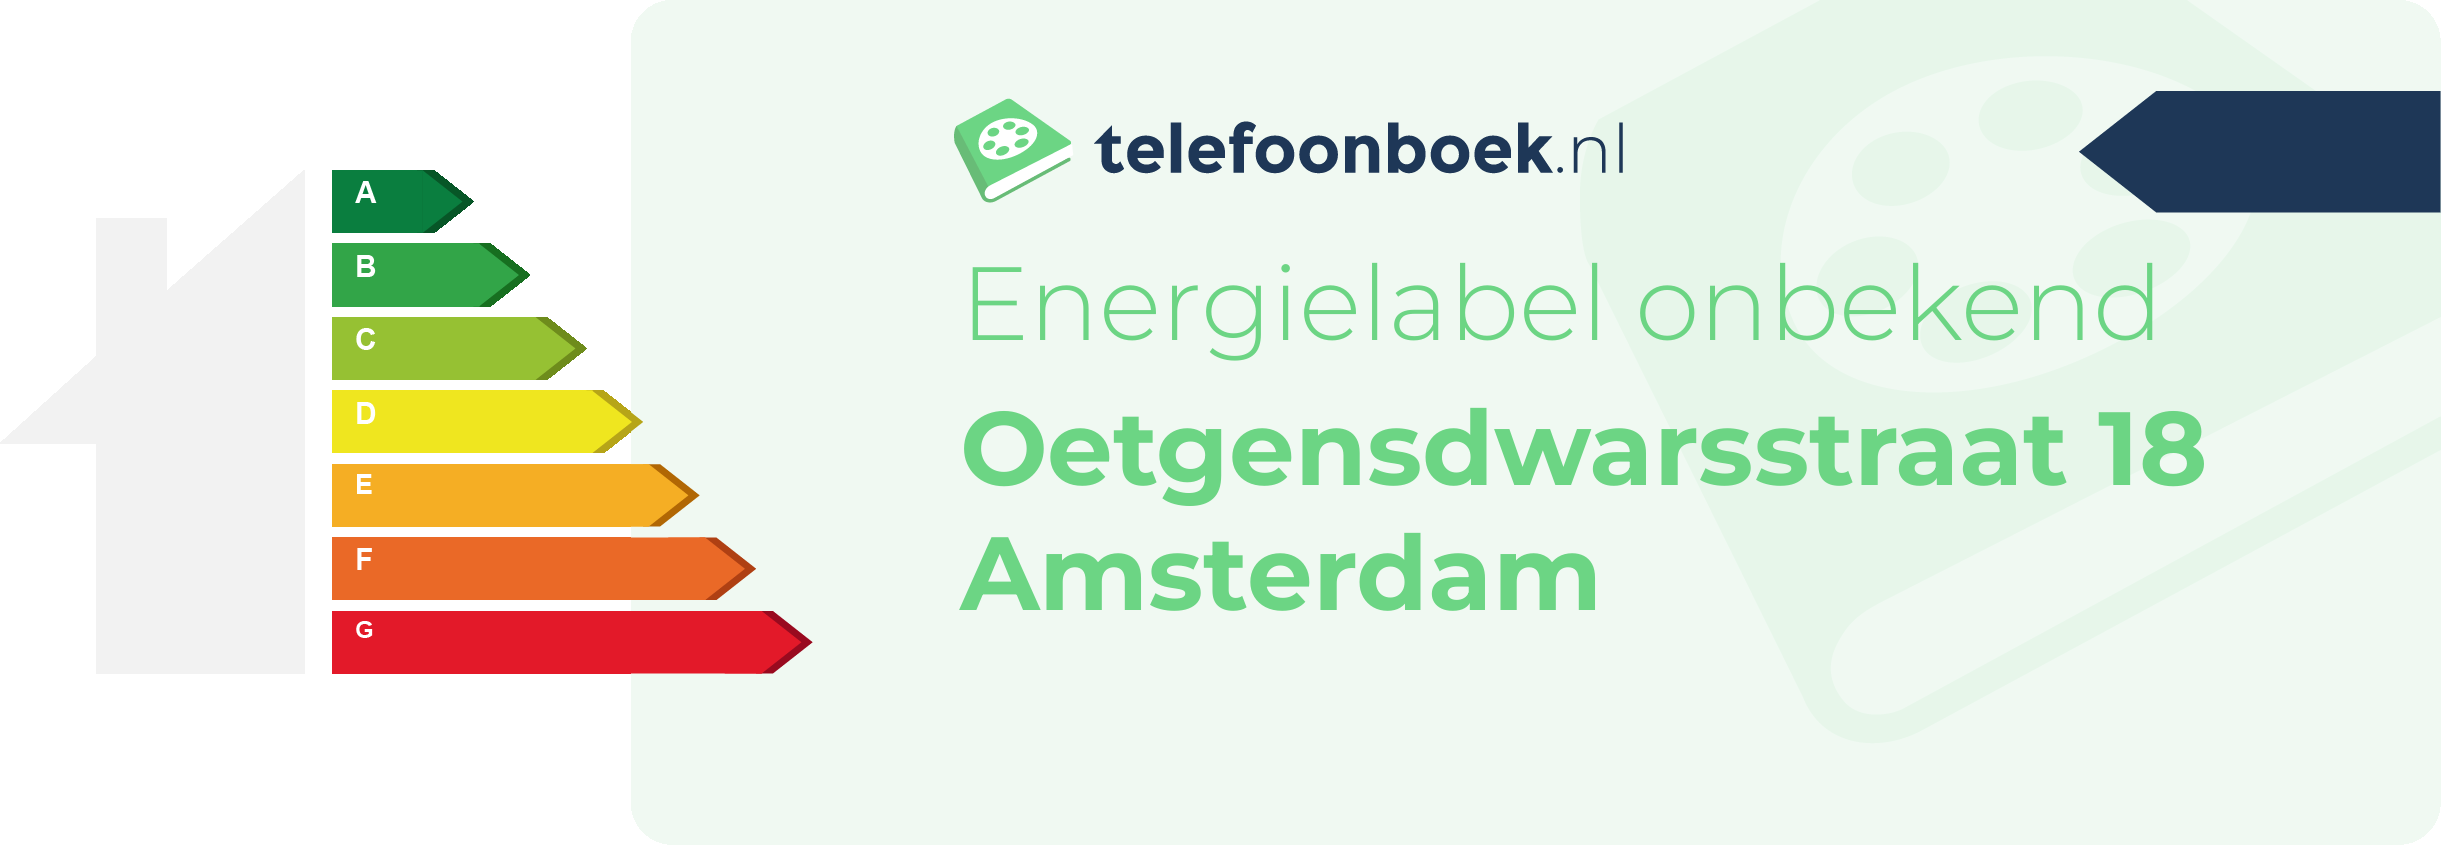 Energielabel Oetgensdwarsstraat 18 Amsterdam